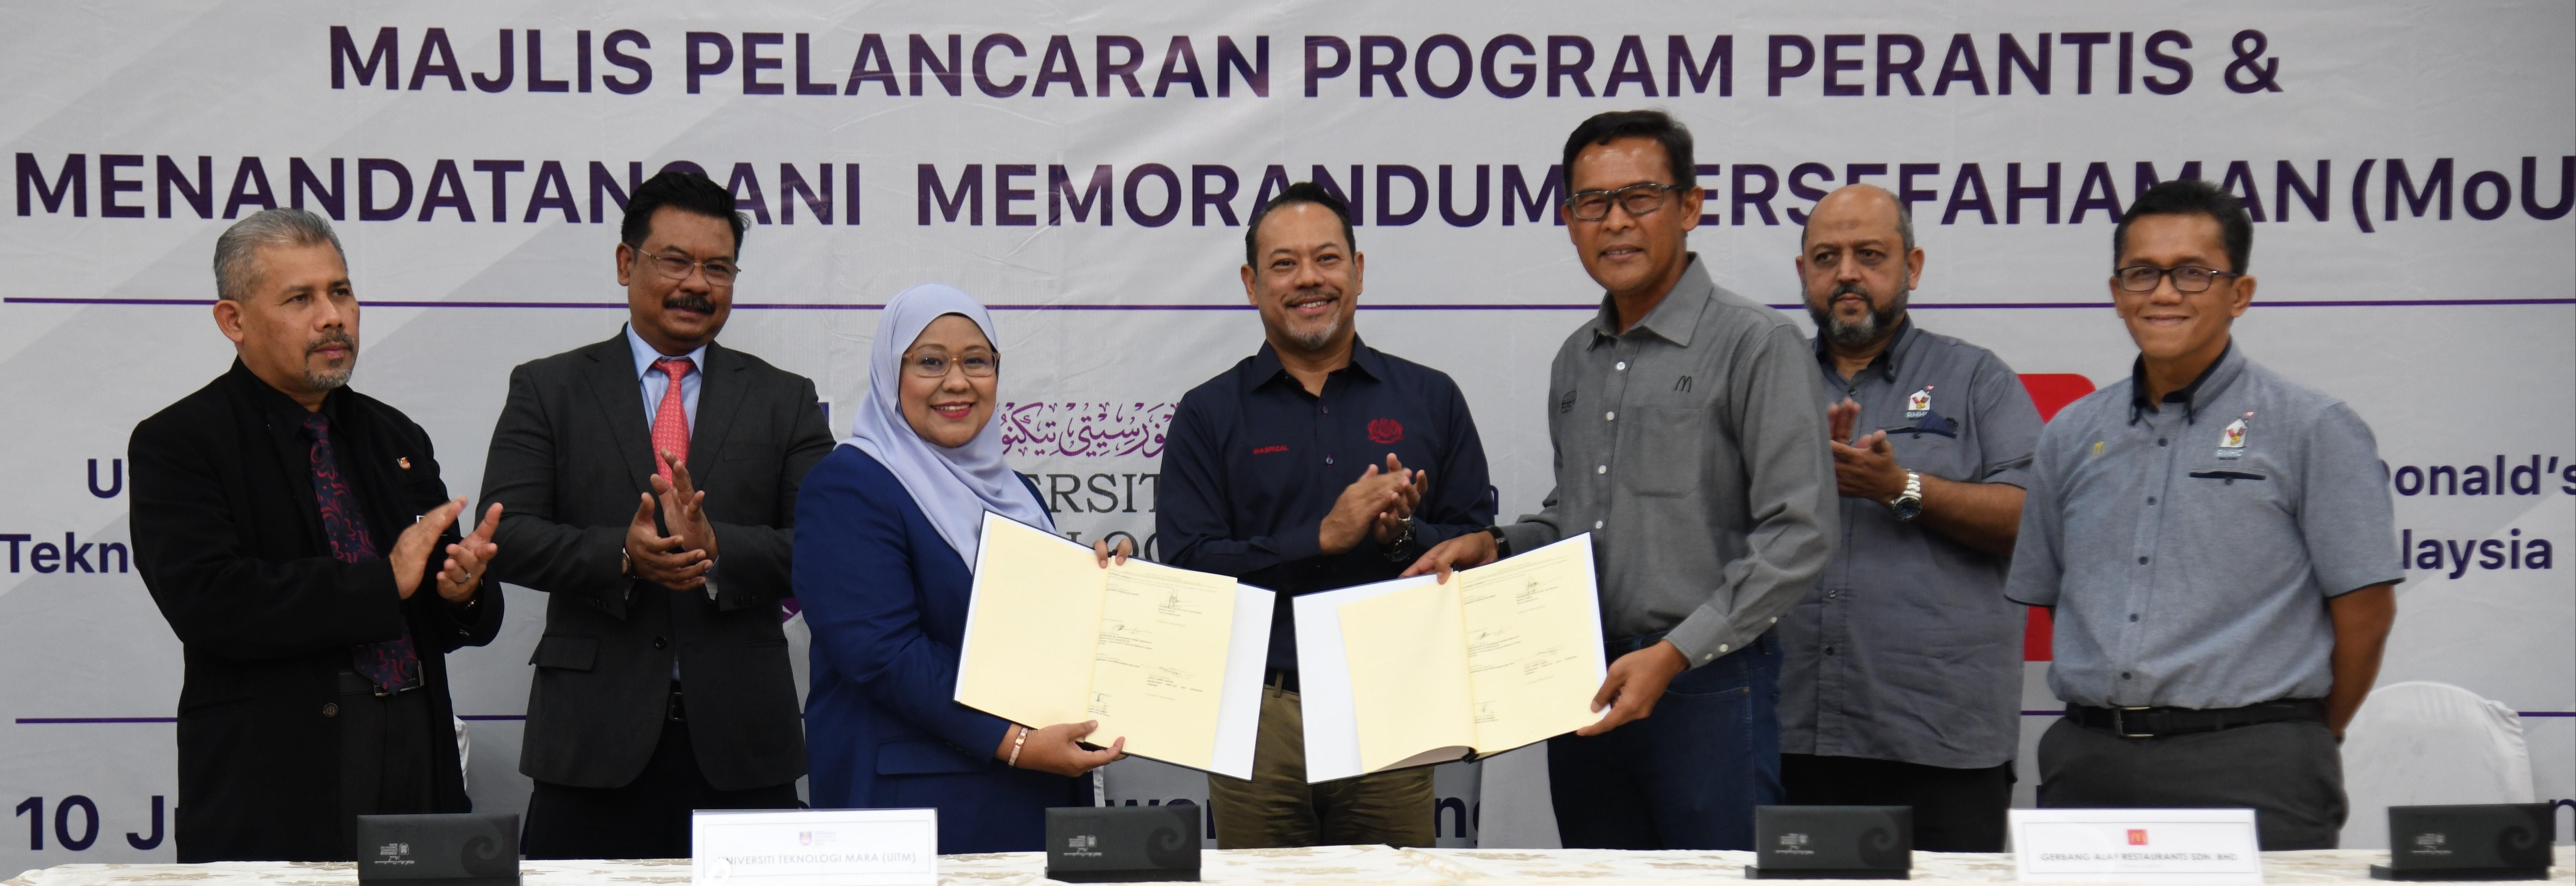 Pengukuhan Kebolehpasaran Graduan Melalui Inisiatif Management Apprentice Program (MAP), Graduate Employability Program (GEP) dan Intenship Program (IP) bersama Mcdonald’s Malaysia